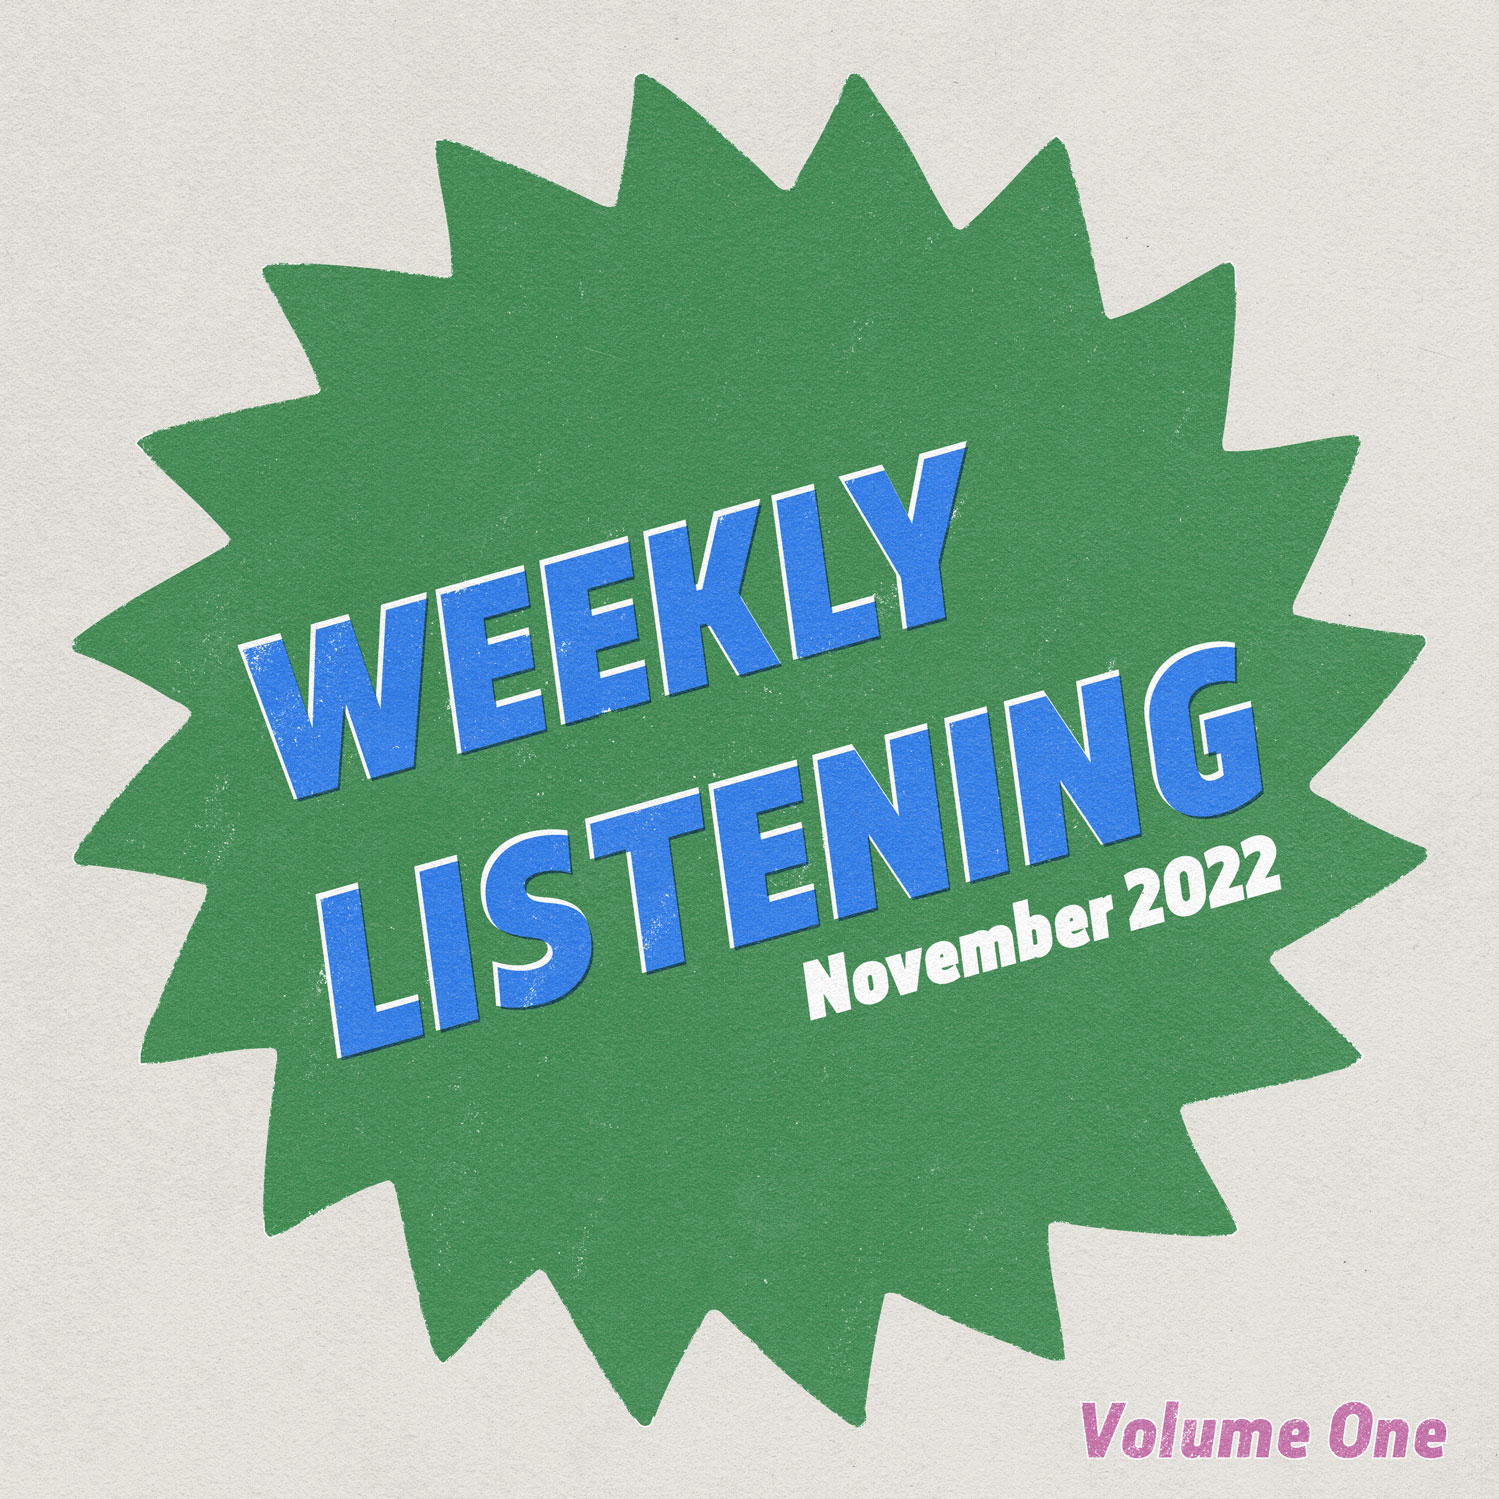 november 2022 weekly listening volume one